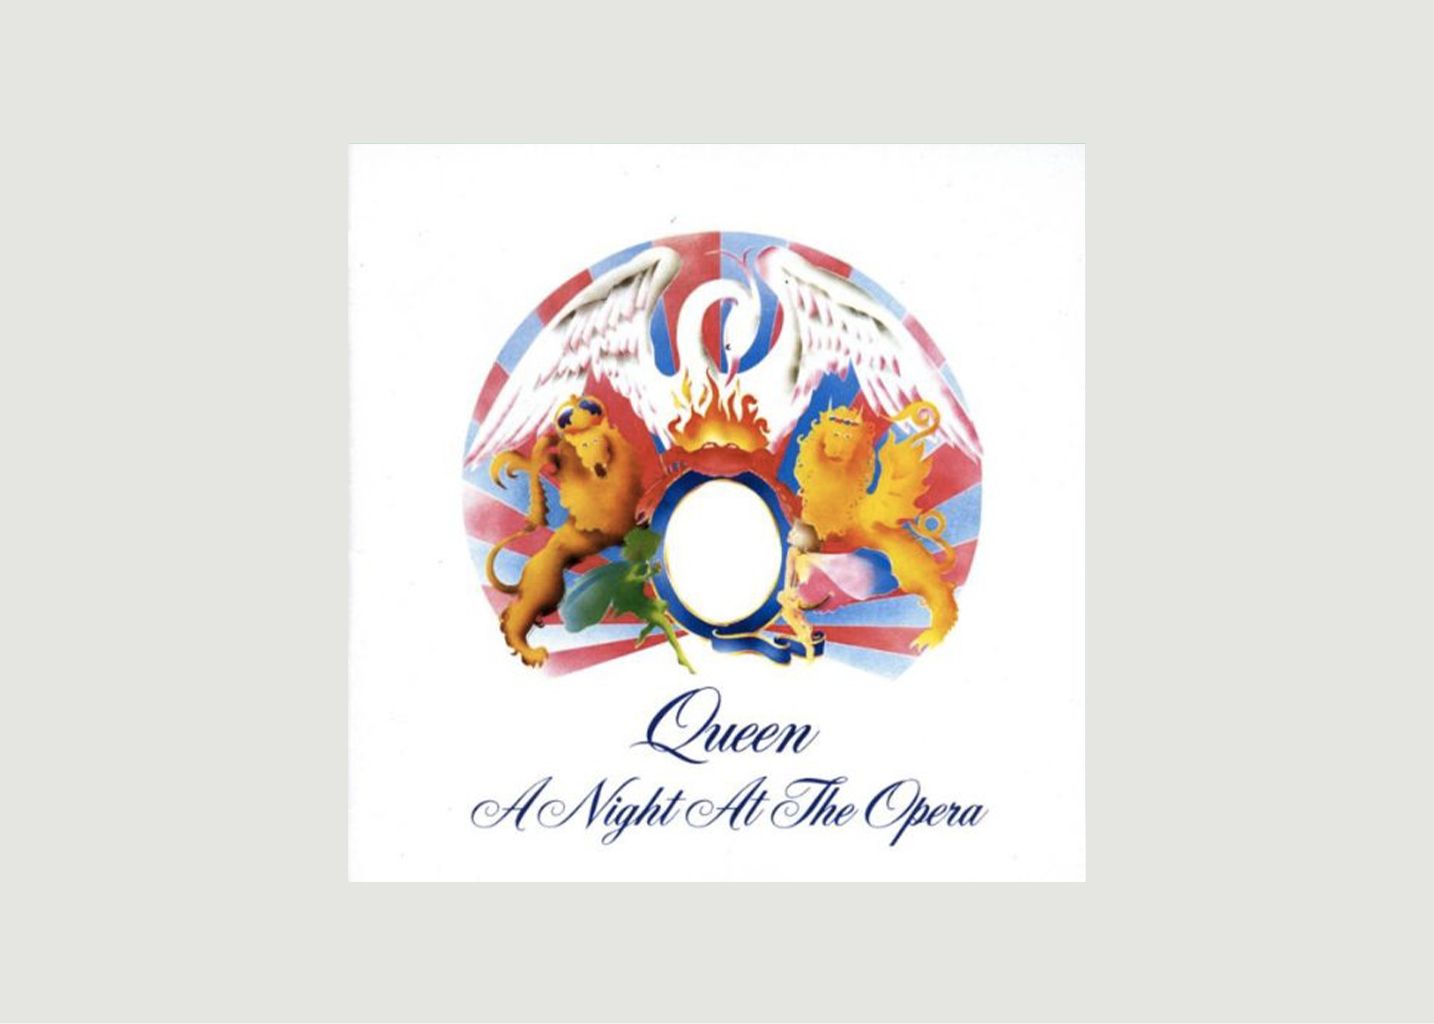 La vinyl-thèque idéale Vinyl A Night At The Opera - Queen